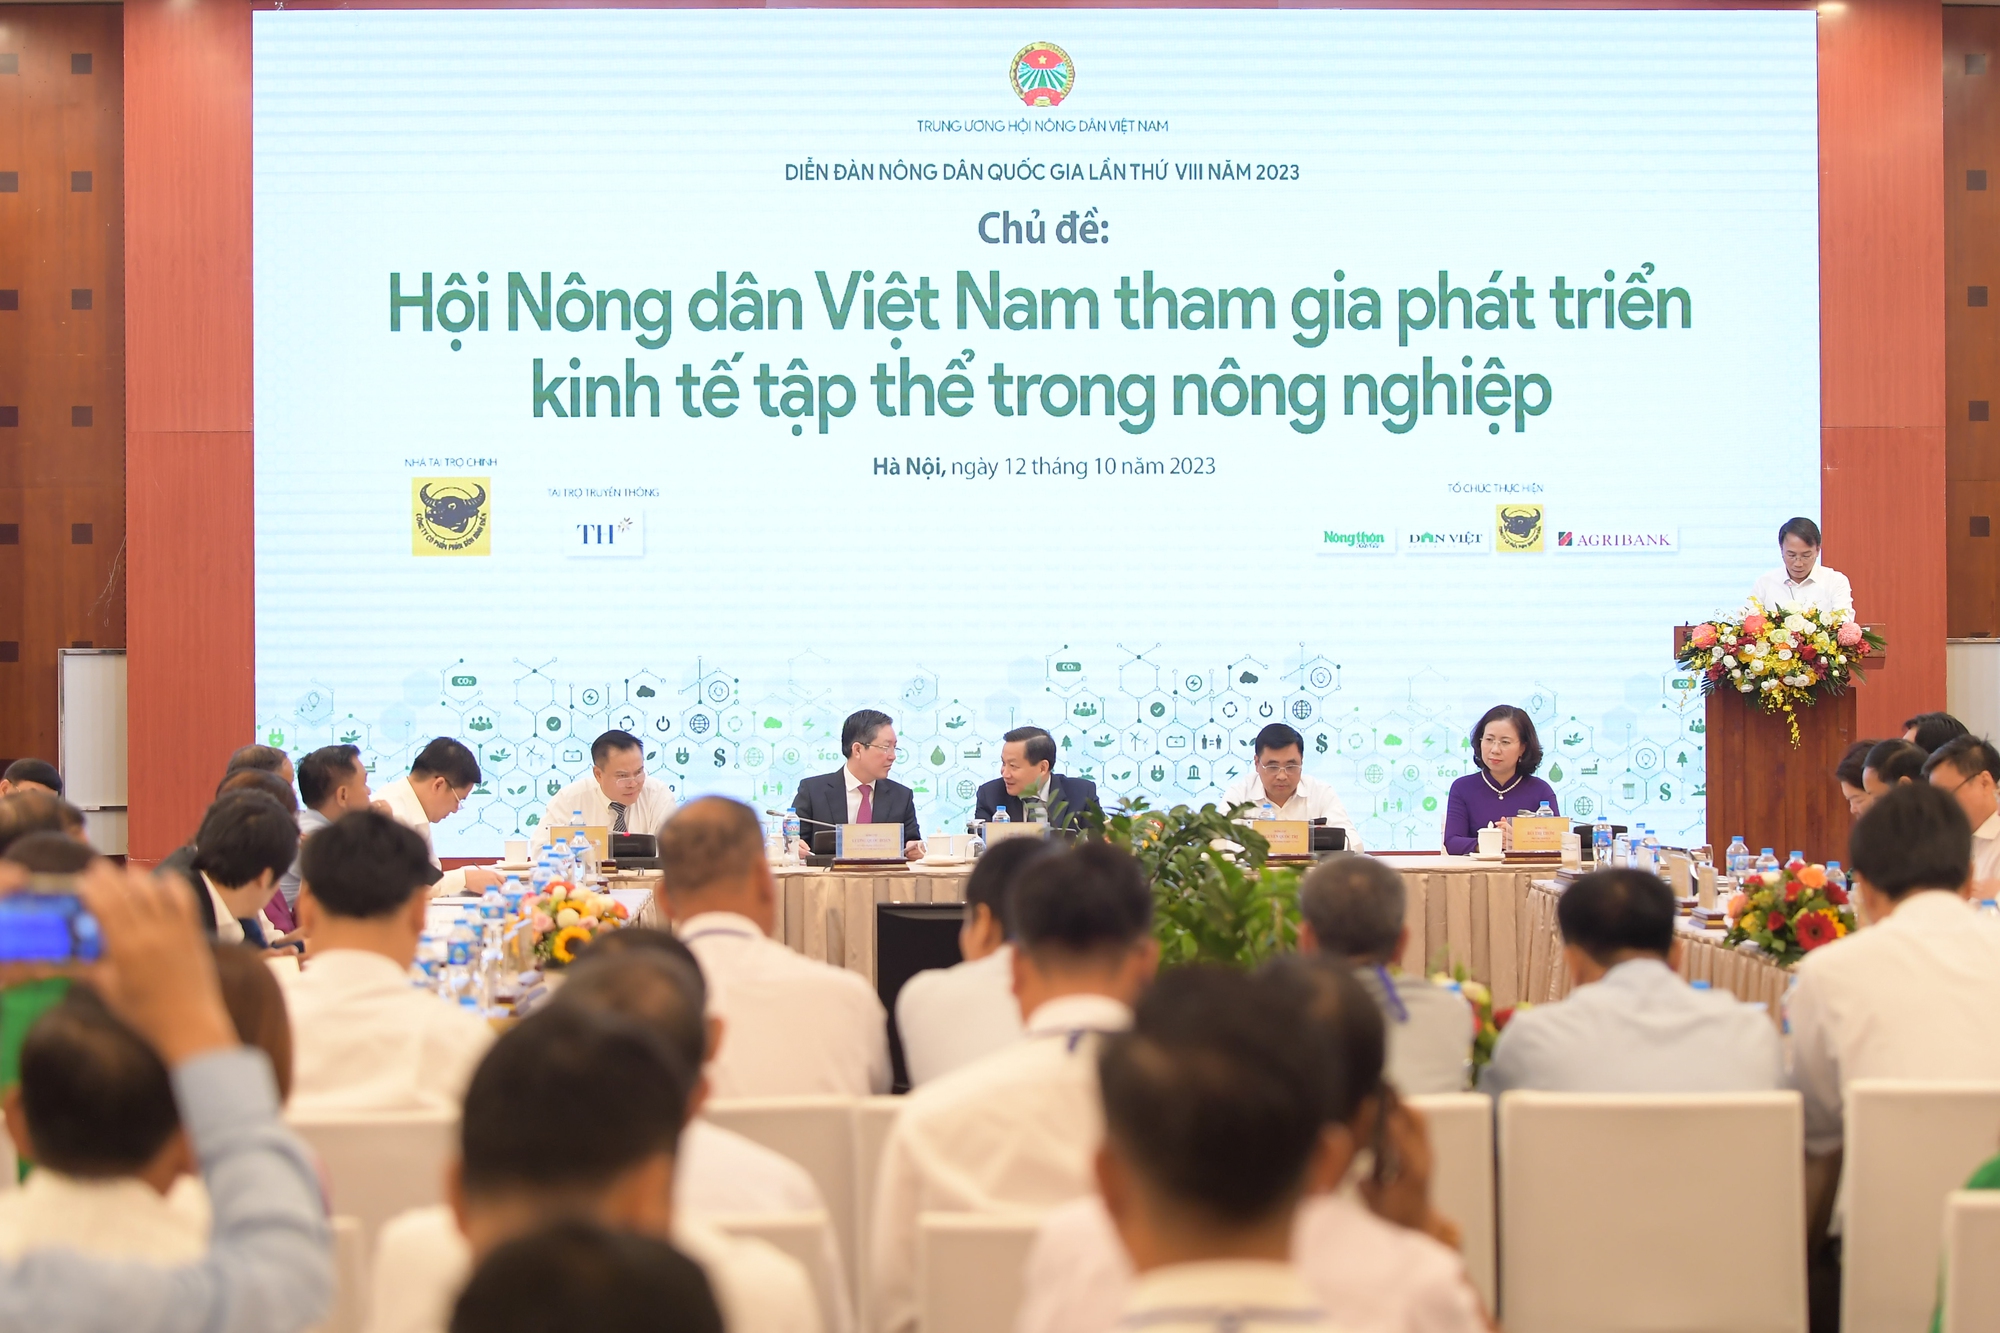 Chủ tịch Hội Nông dân Việt Nam Lương Quốc Đoàn chia sẻ 3 vấn đề cốt lõi trong phát triển kinh tế tập thể - Ảnh 2.